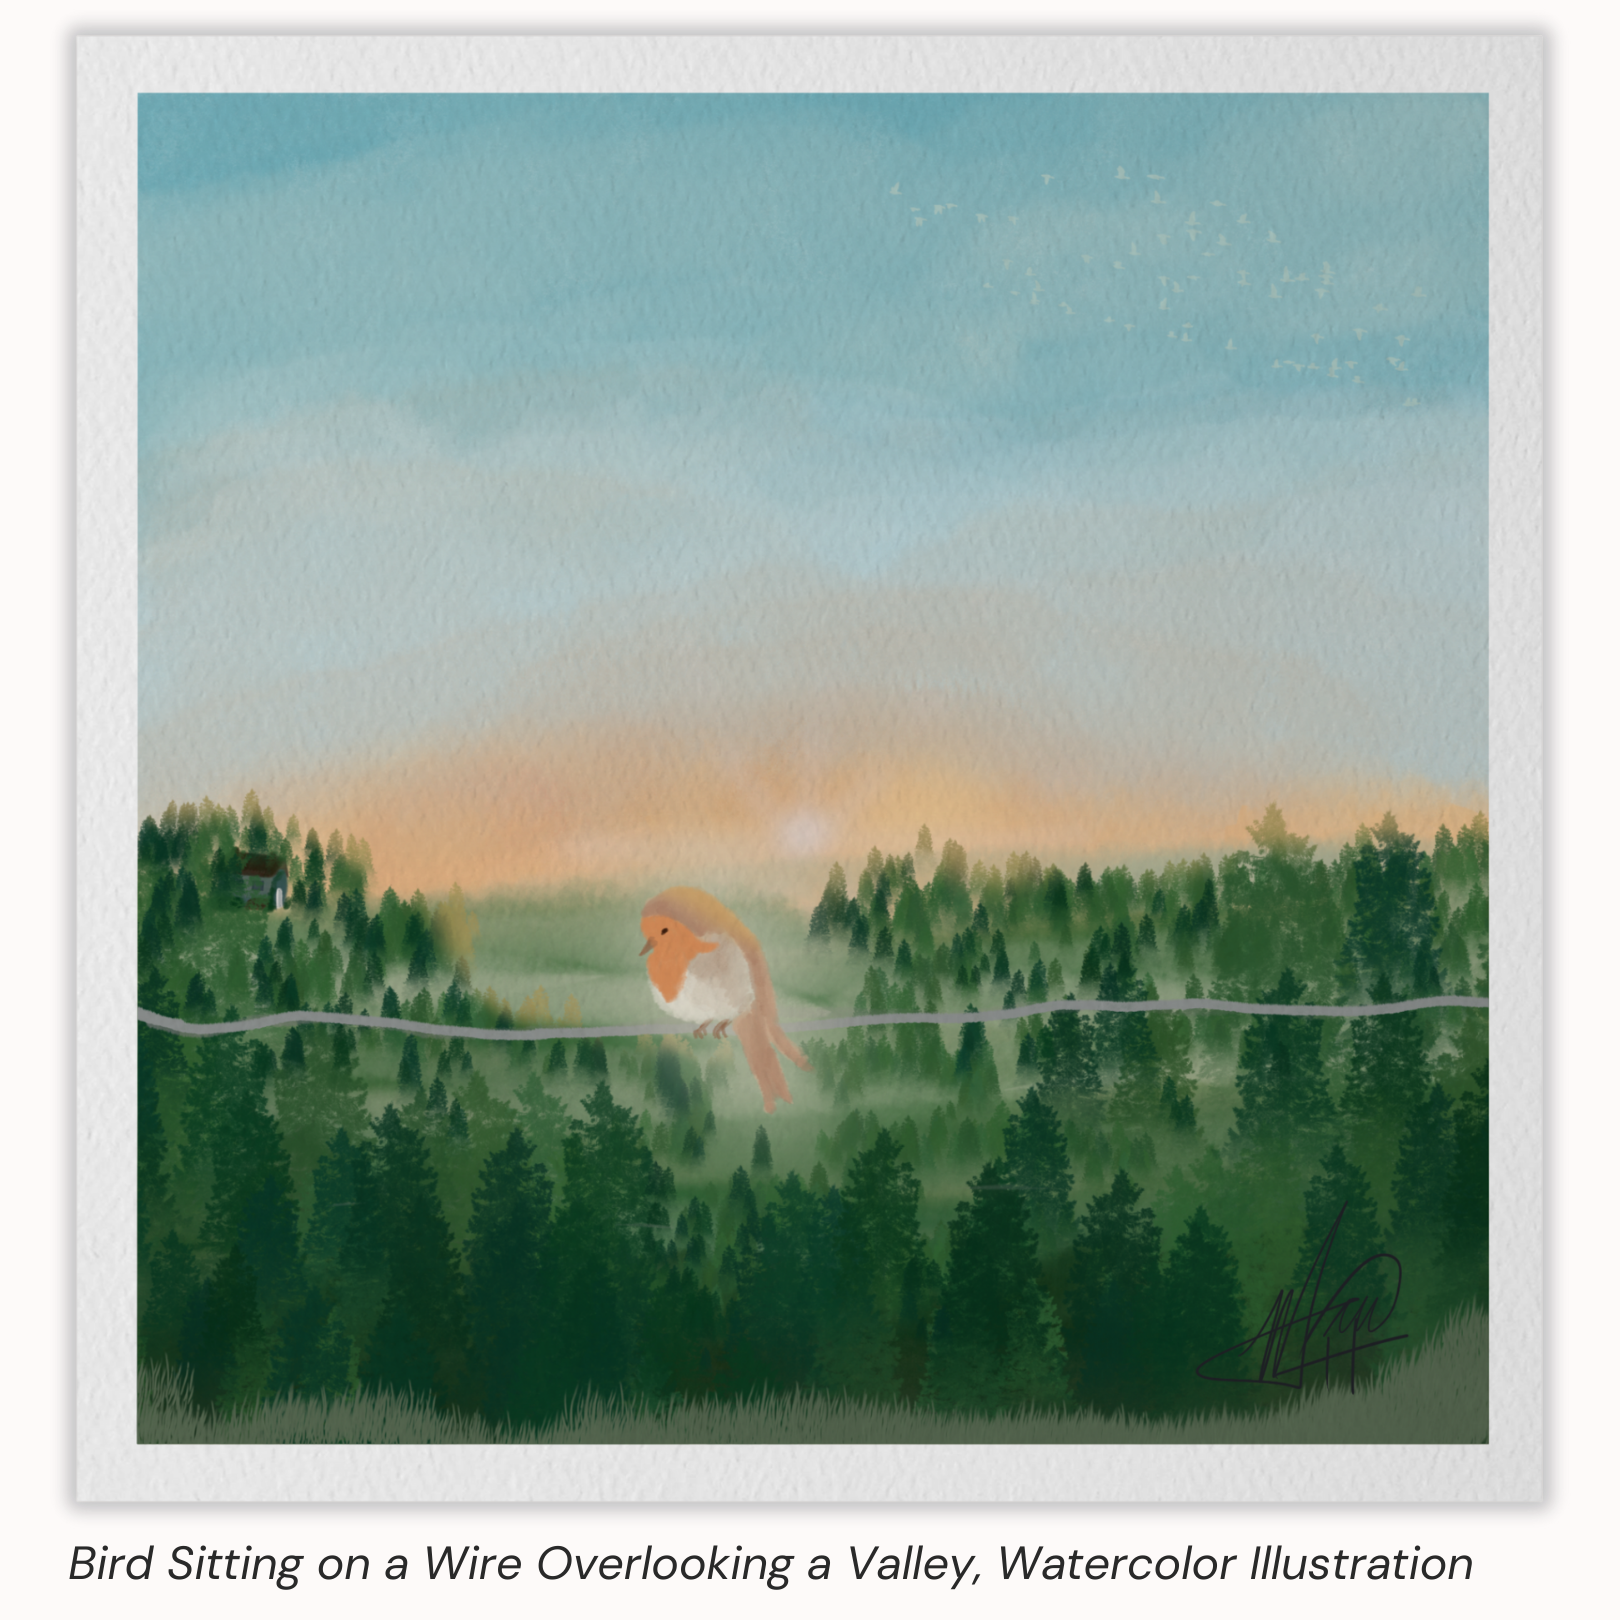 Maria von Hatten Watercolor Bird Sitting on a Wire Overlooking a Valley Illustration